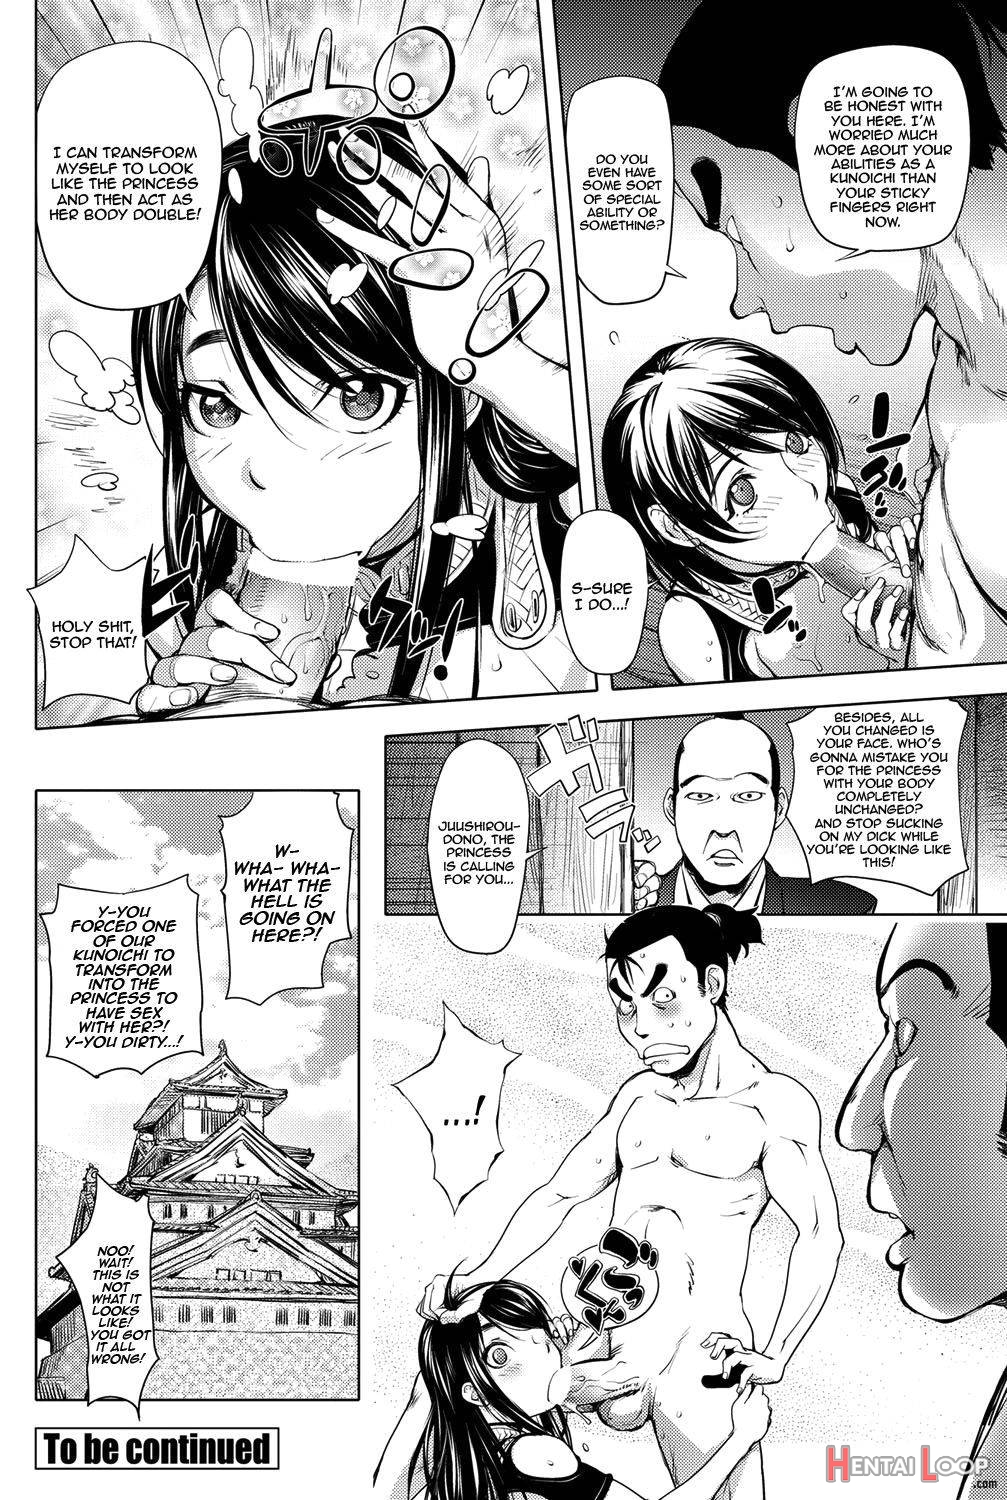 Torokeru Kunoichi Ntr Story + Prequel page 8